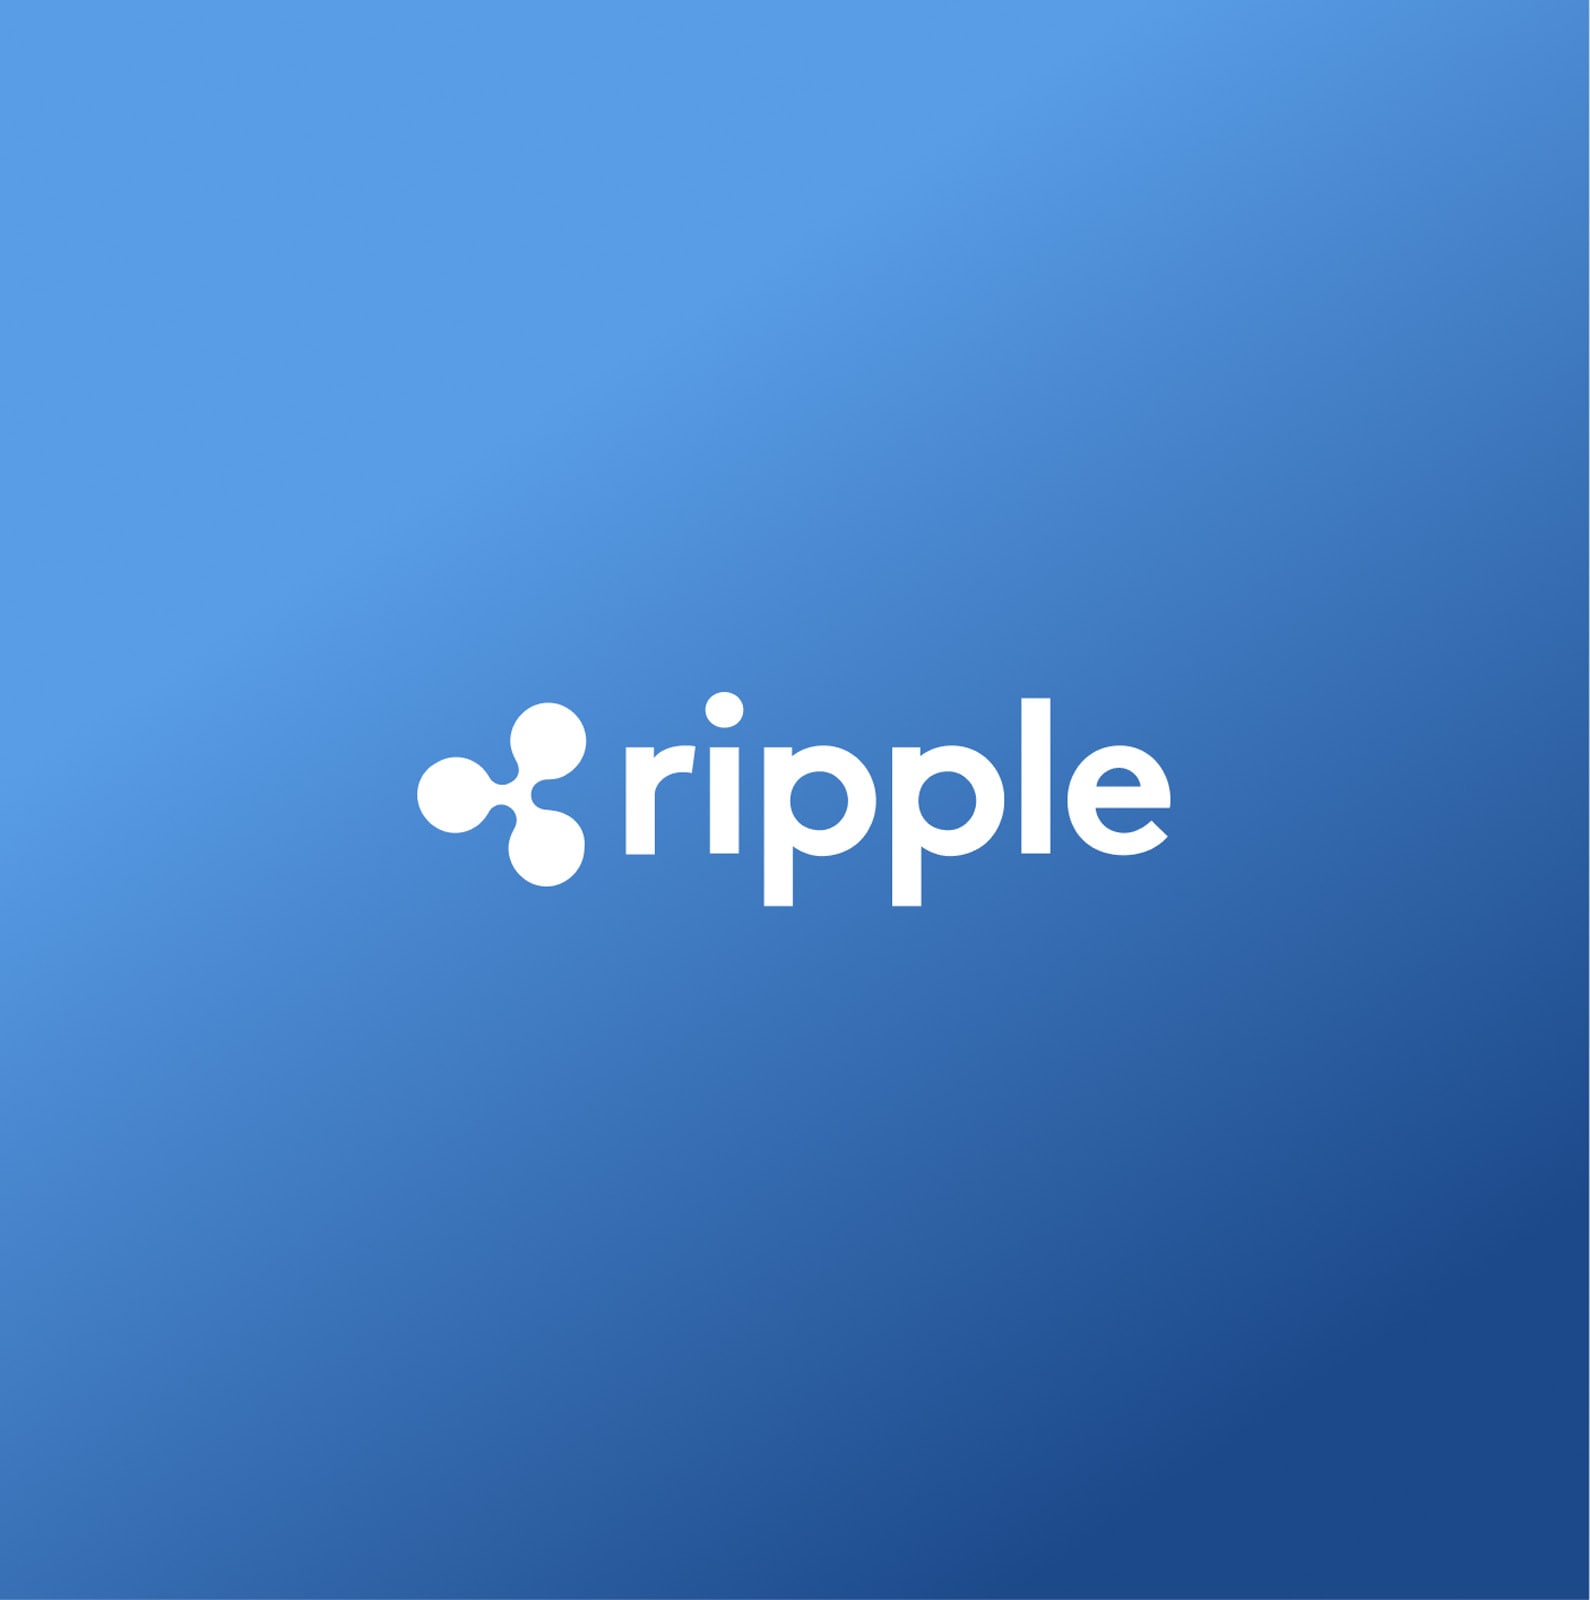 Ripple logo